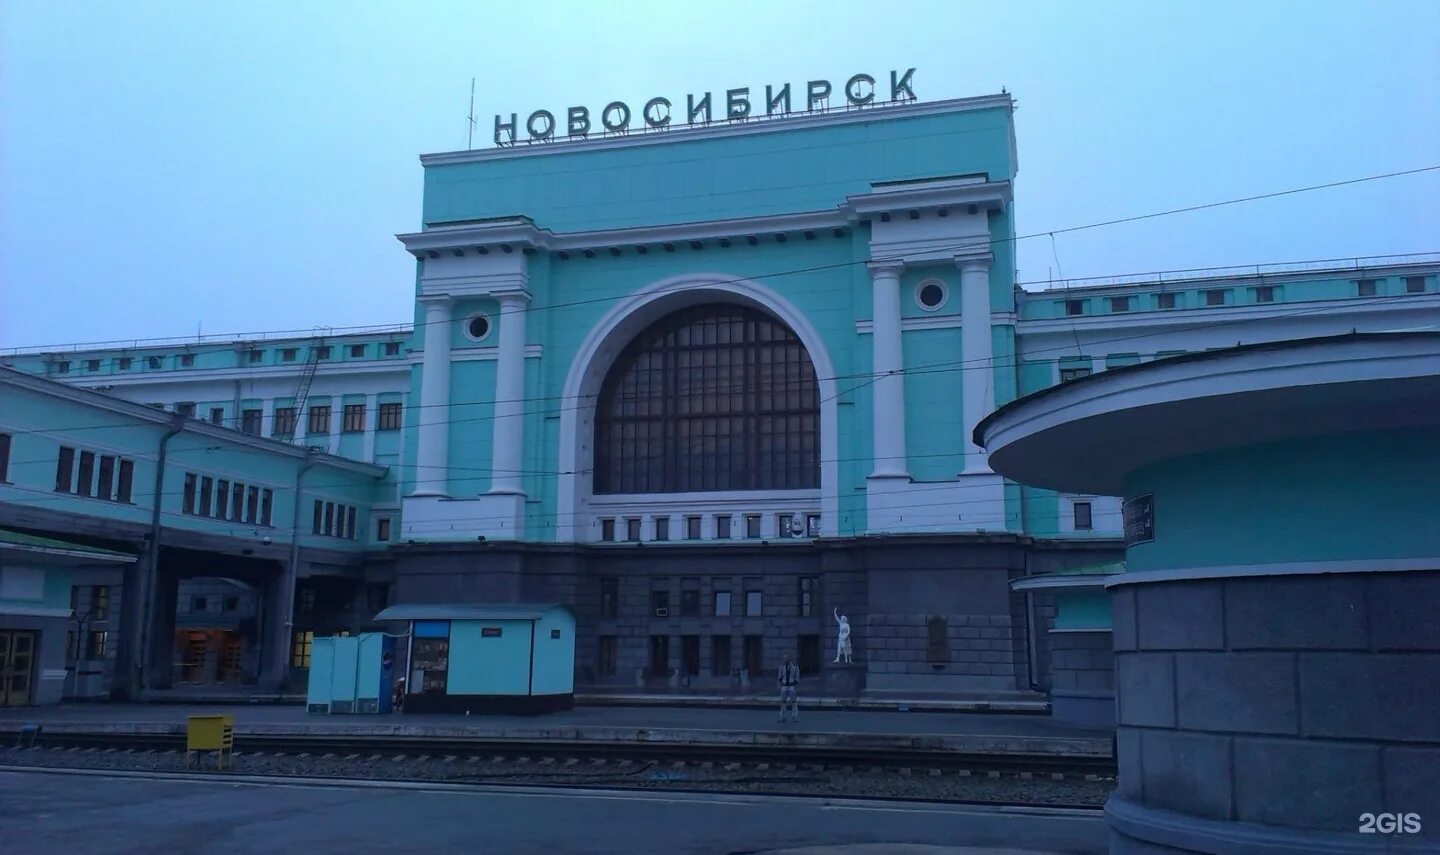 Ж/Д вокзал Новосибирск. Станция Новосибирск-главный, Новосибирск. ЖД вокзал Новосибирск главный. Г Новосибирск ЖД вокзал главный. Вокзал новосибирск главный сайт